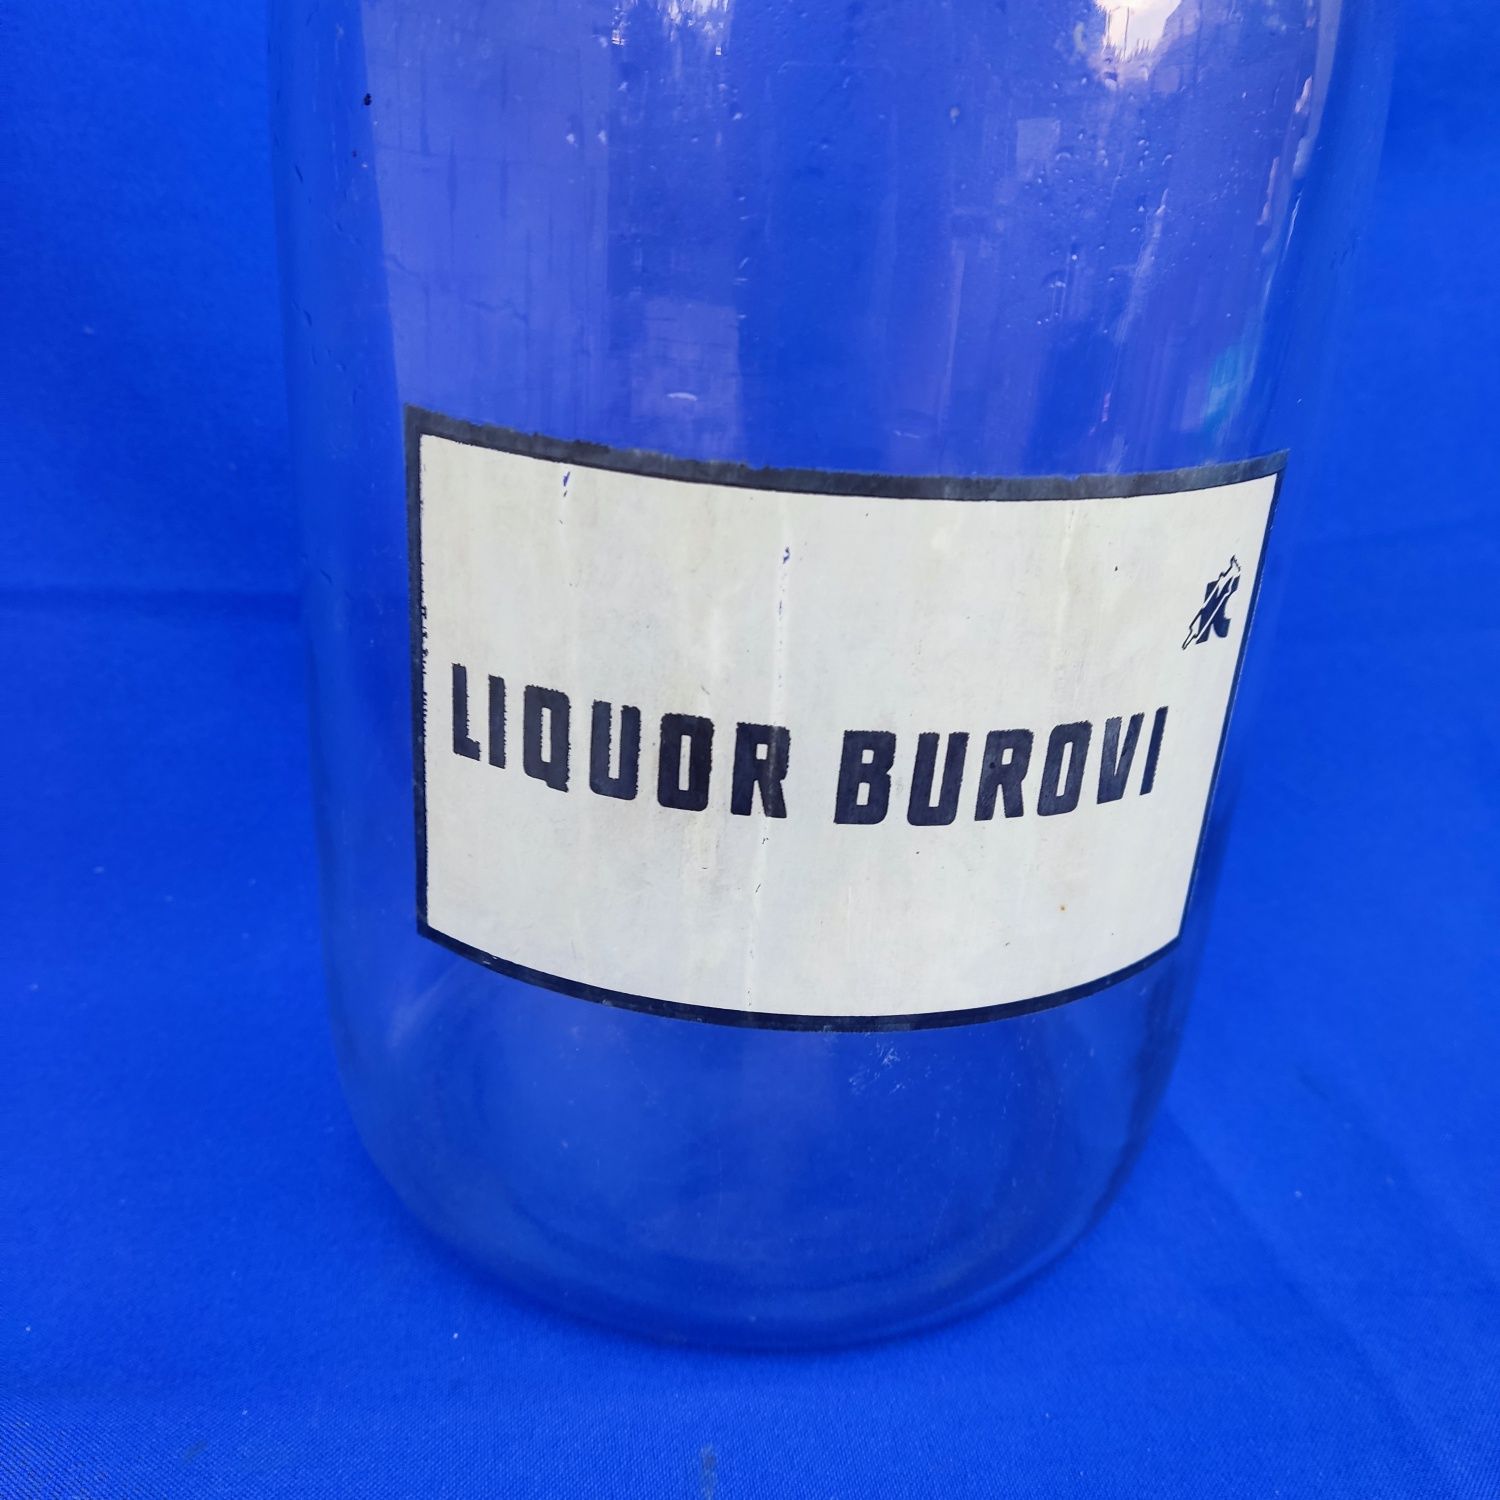 Стеклянный бутыль на 5 л литров СССР  с надписью жидкость Бурова Liquo